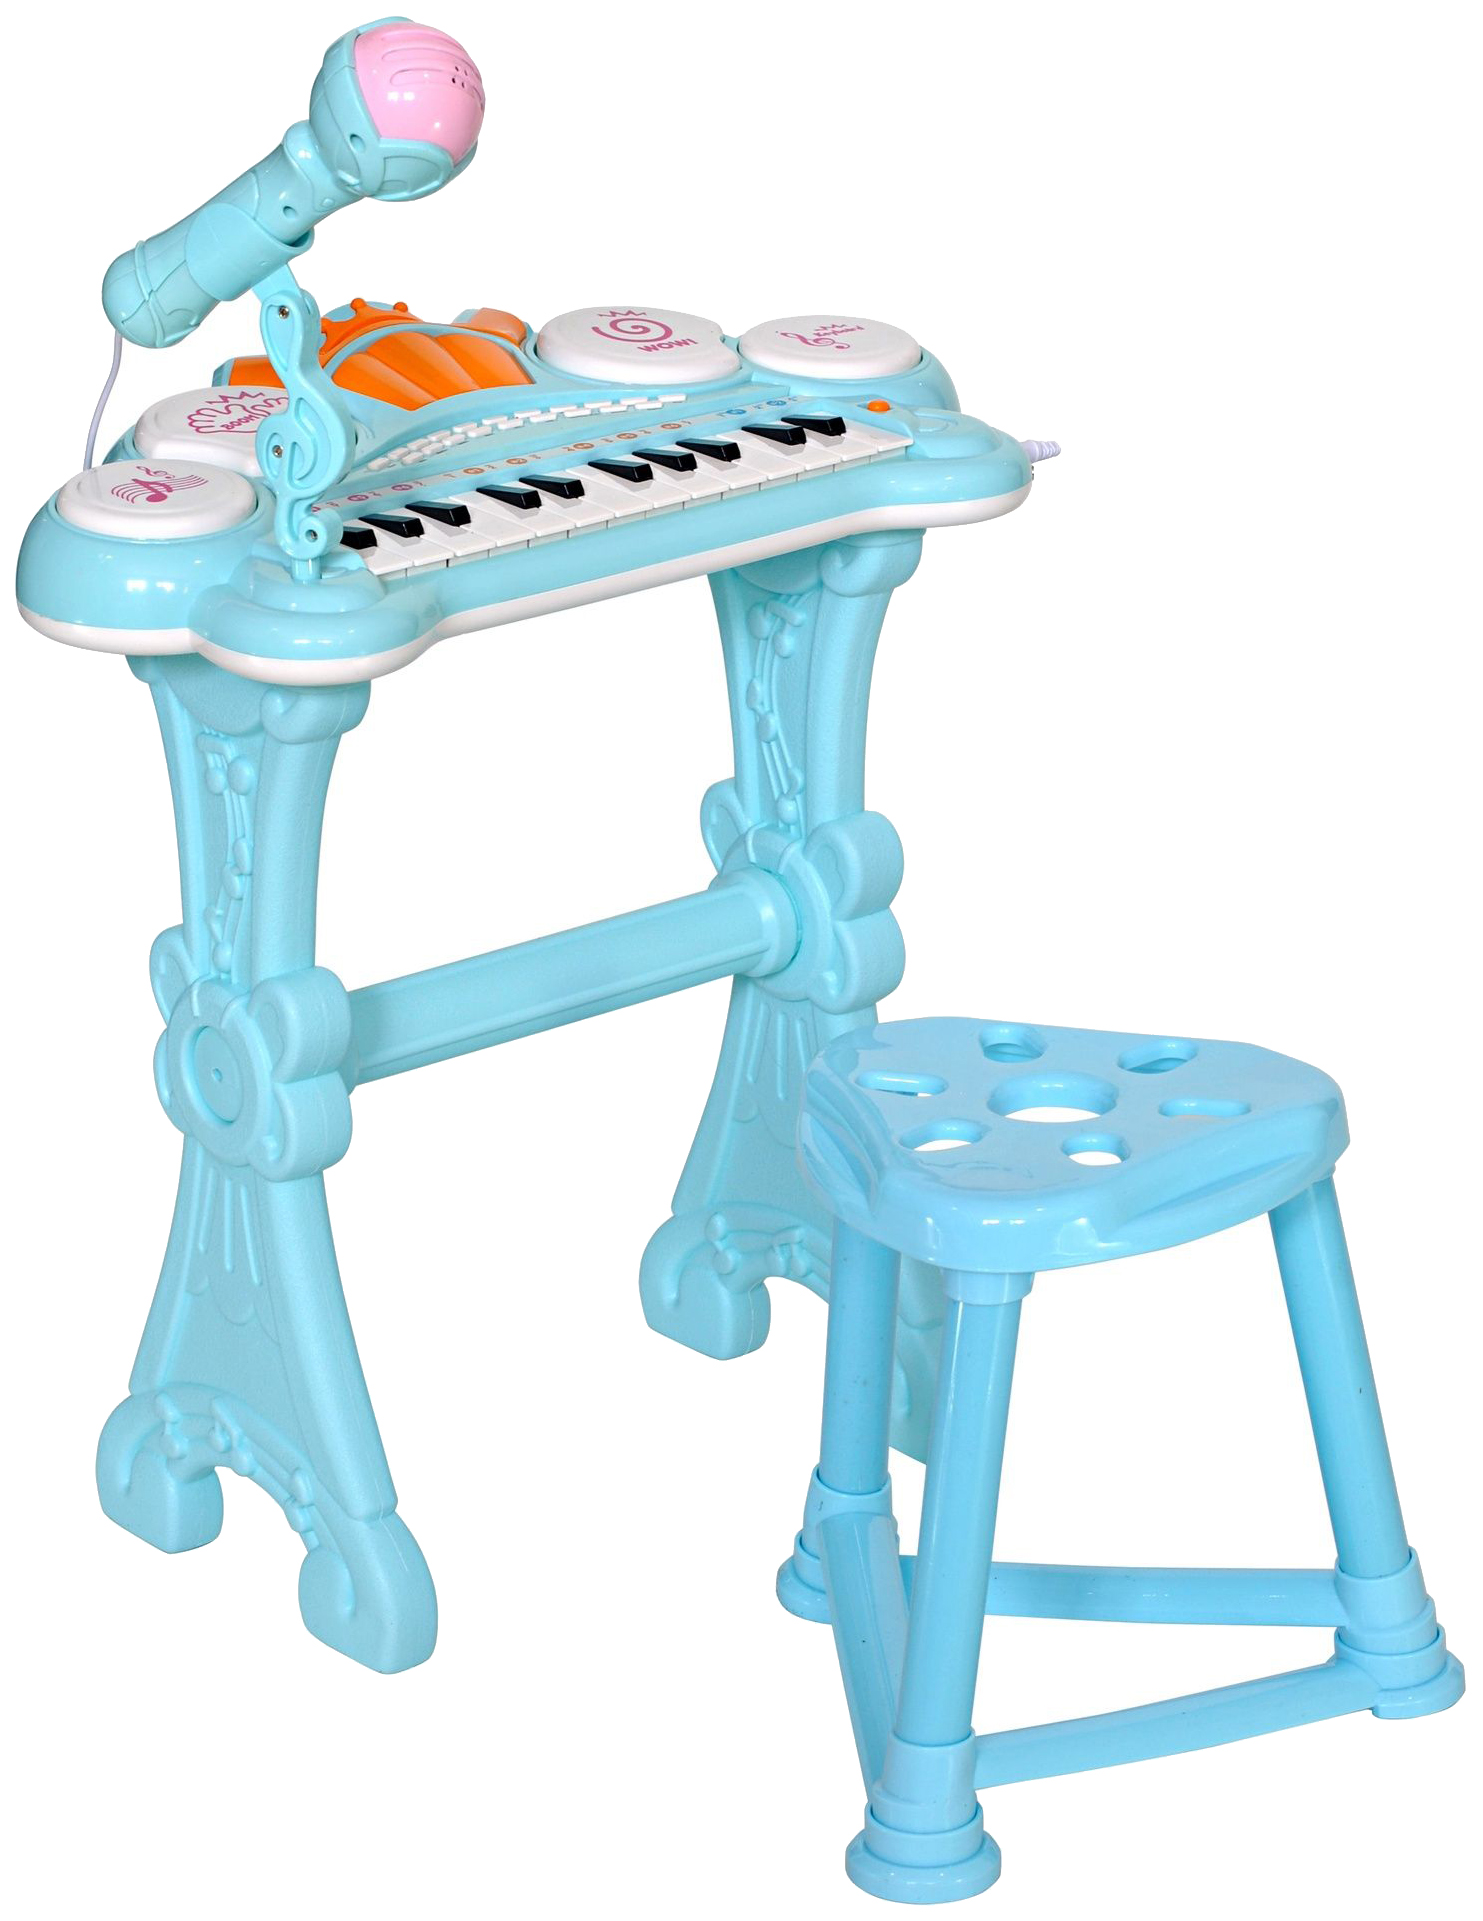 Музыкальный детский центр пианино голубой. Hs0356831